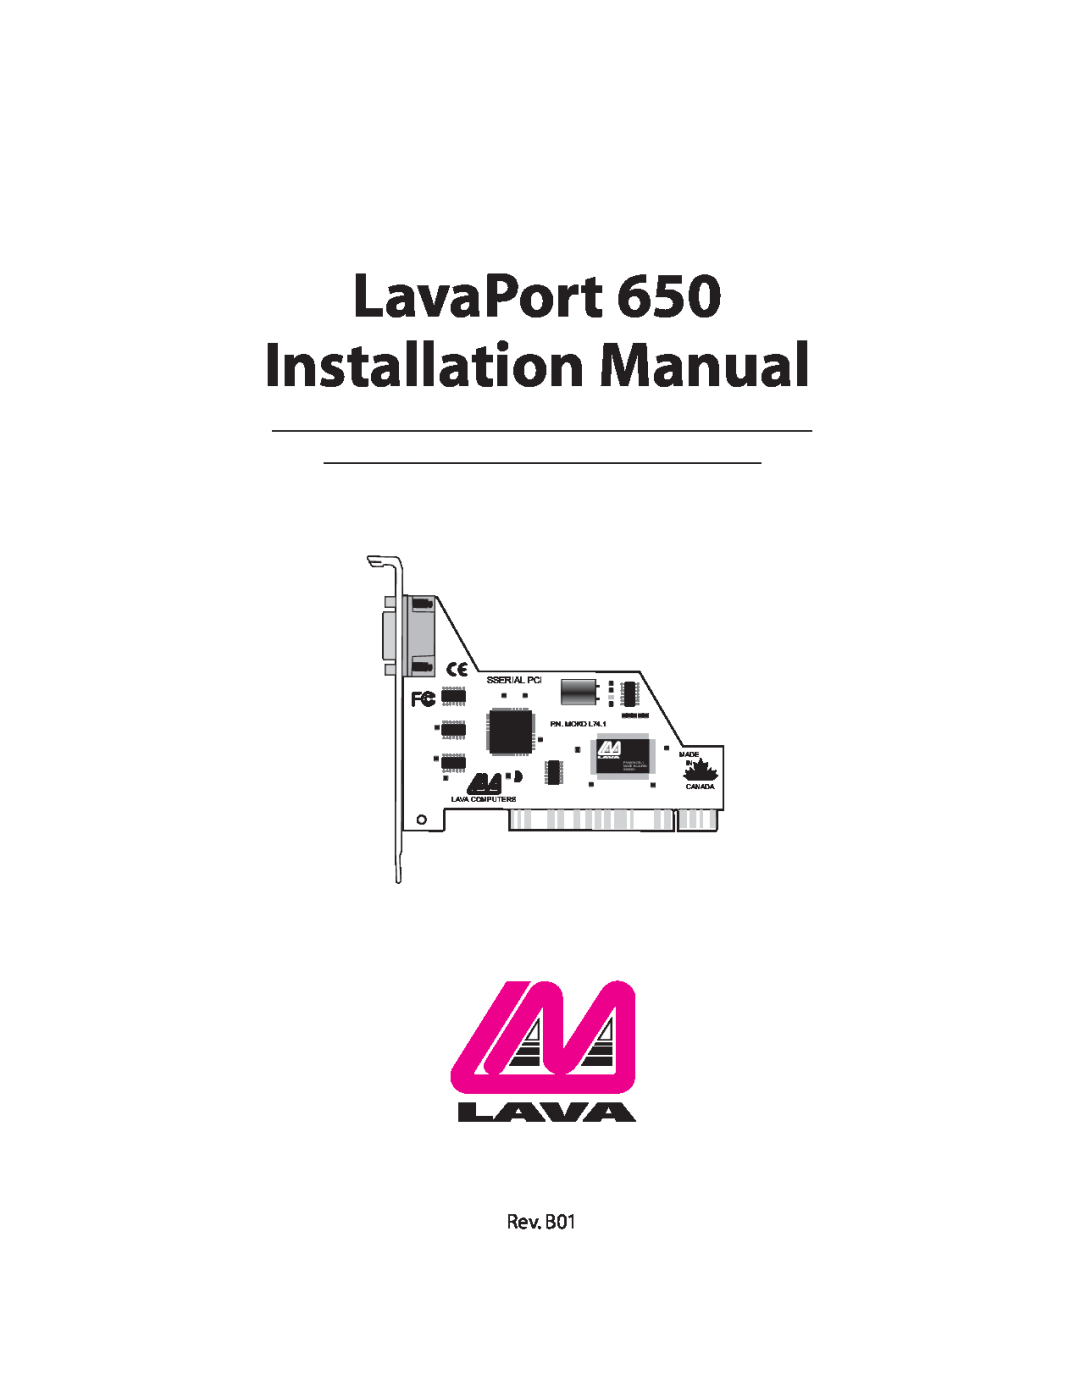 Lava Computer 650 installation manual LavaPort Installation Manual, Rev. B01 